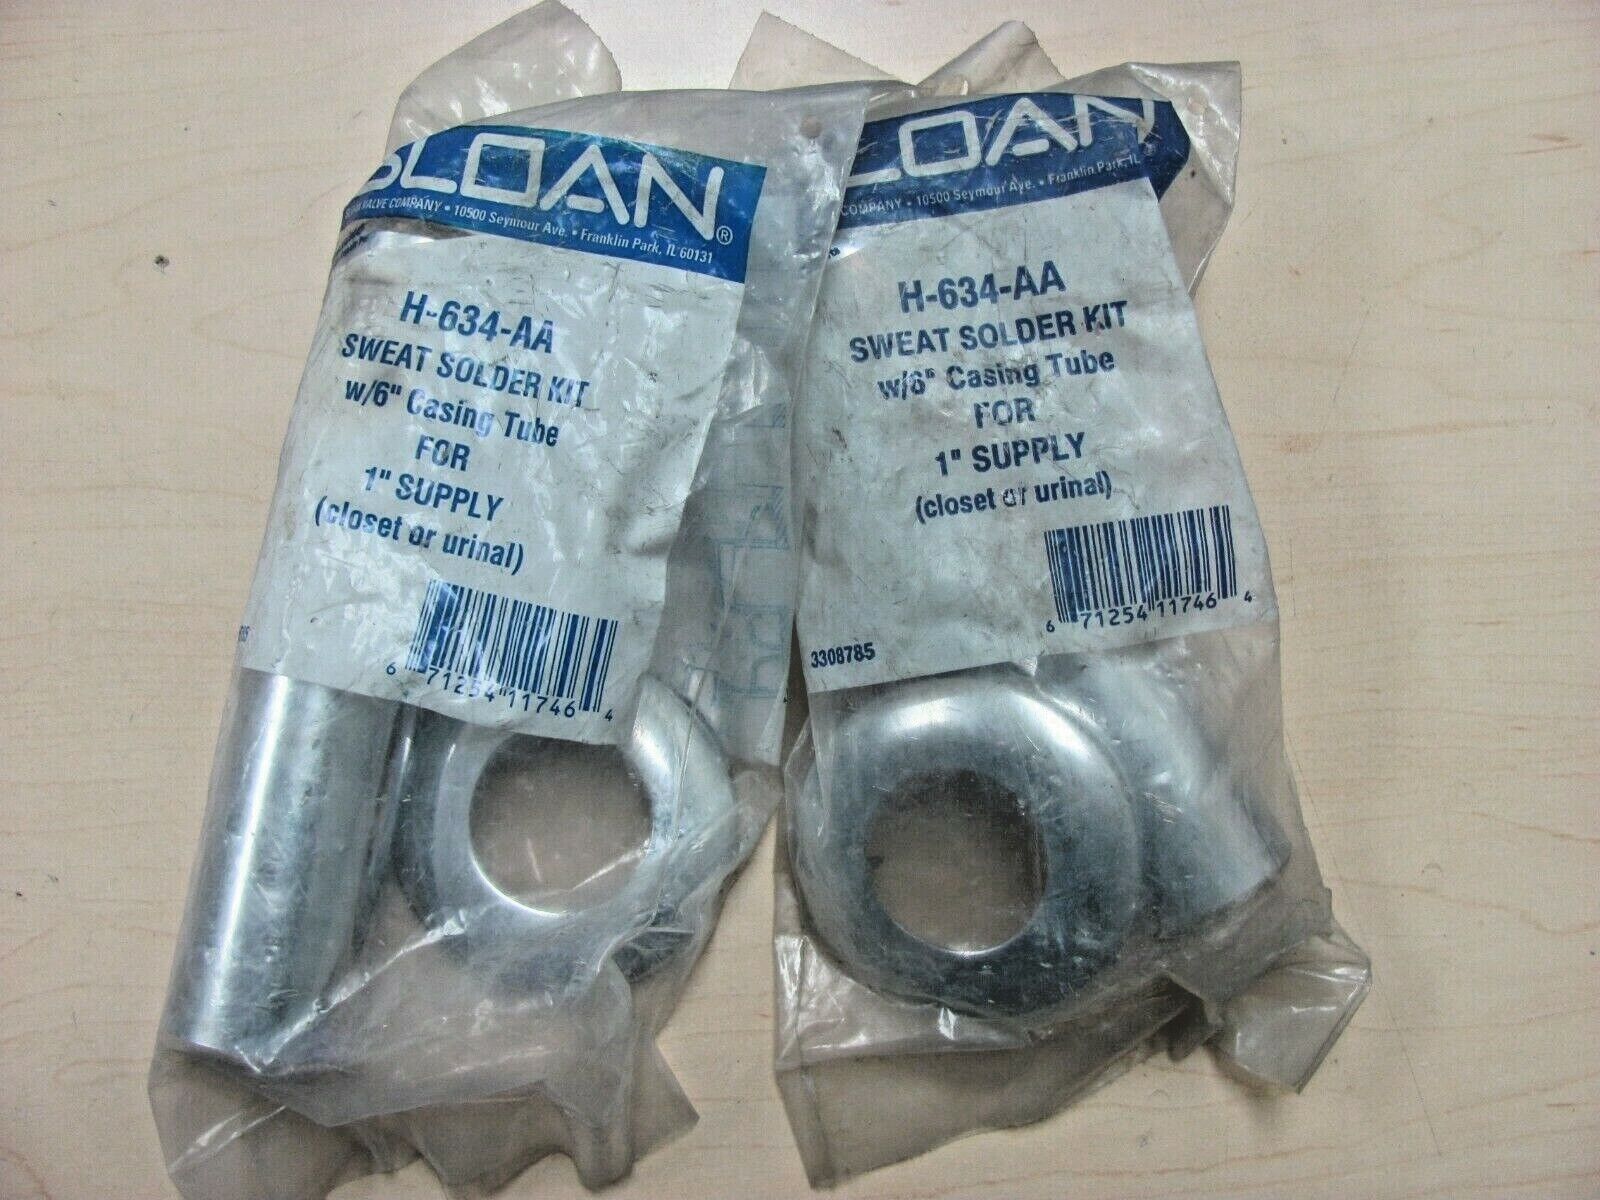 Sloan 3308785 - H-634-AA - Sweat Solder Kit for 1" Supply w/6" casing - Lot of 2 Sloan 3308785